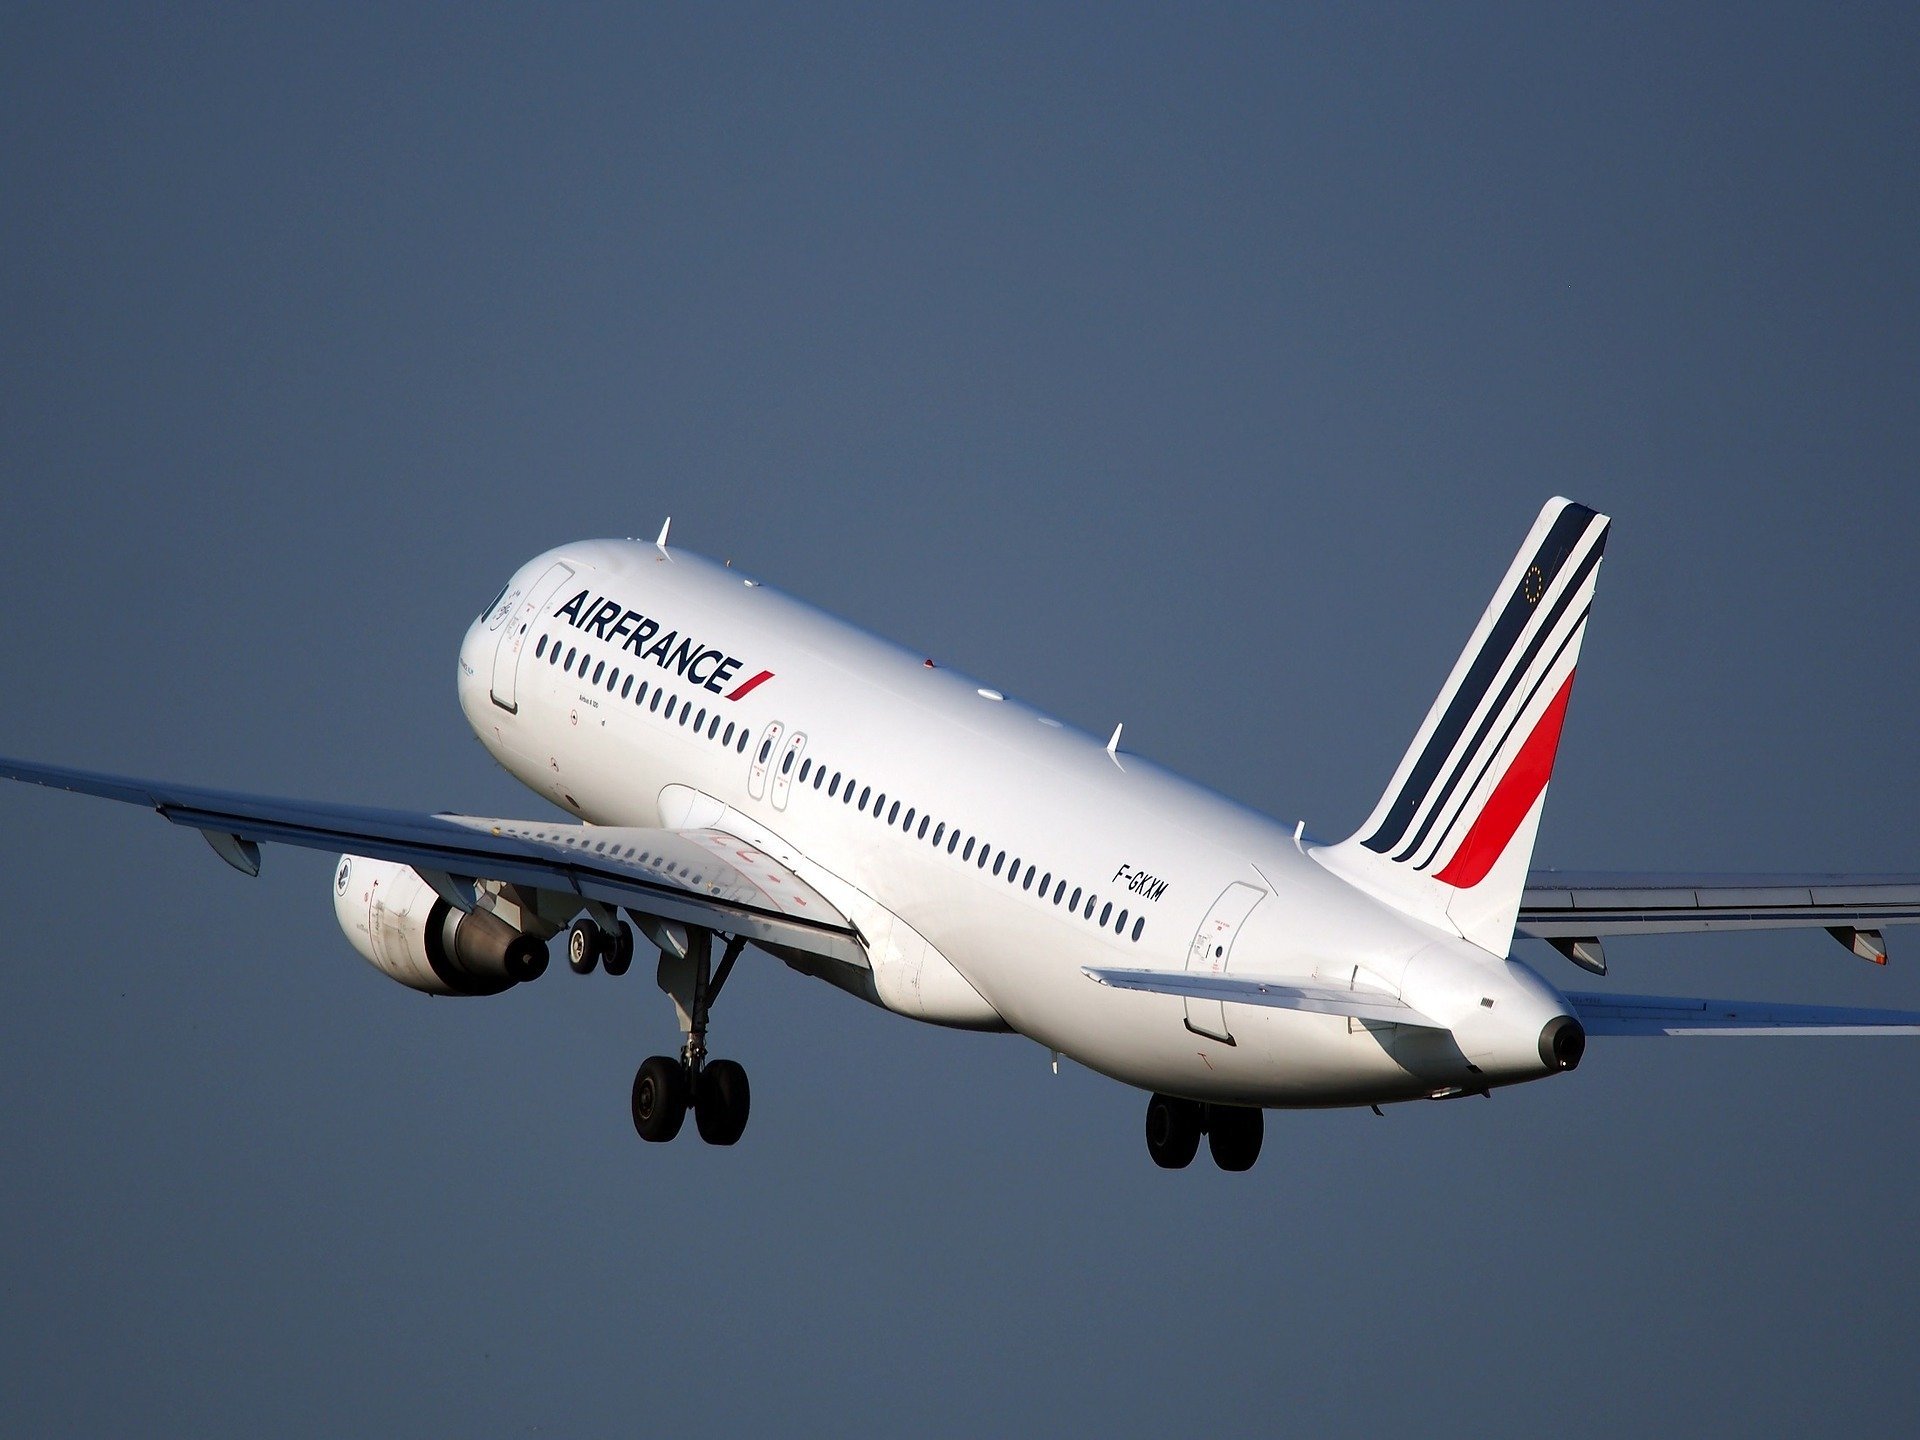 airplane 1995432 1920.jpg?resize=412,275 - Paris : Un enfant retrouvé mort dans le train d'atterrissage d'un avion d'Air France à Roissy